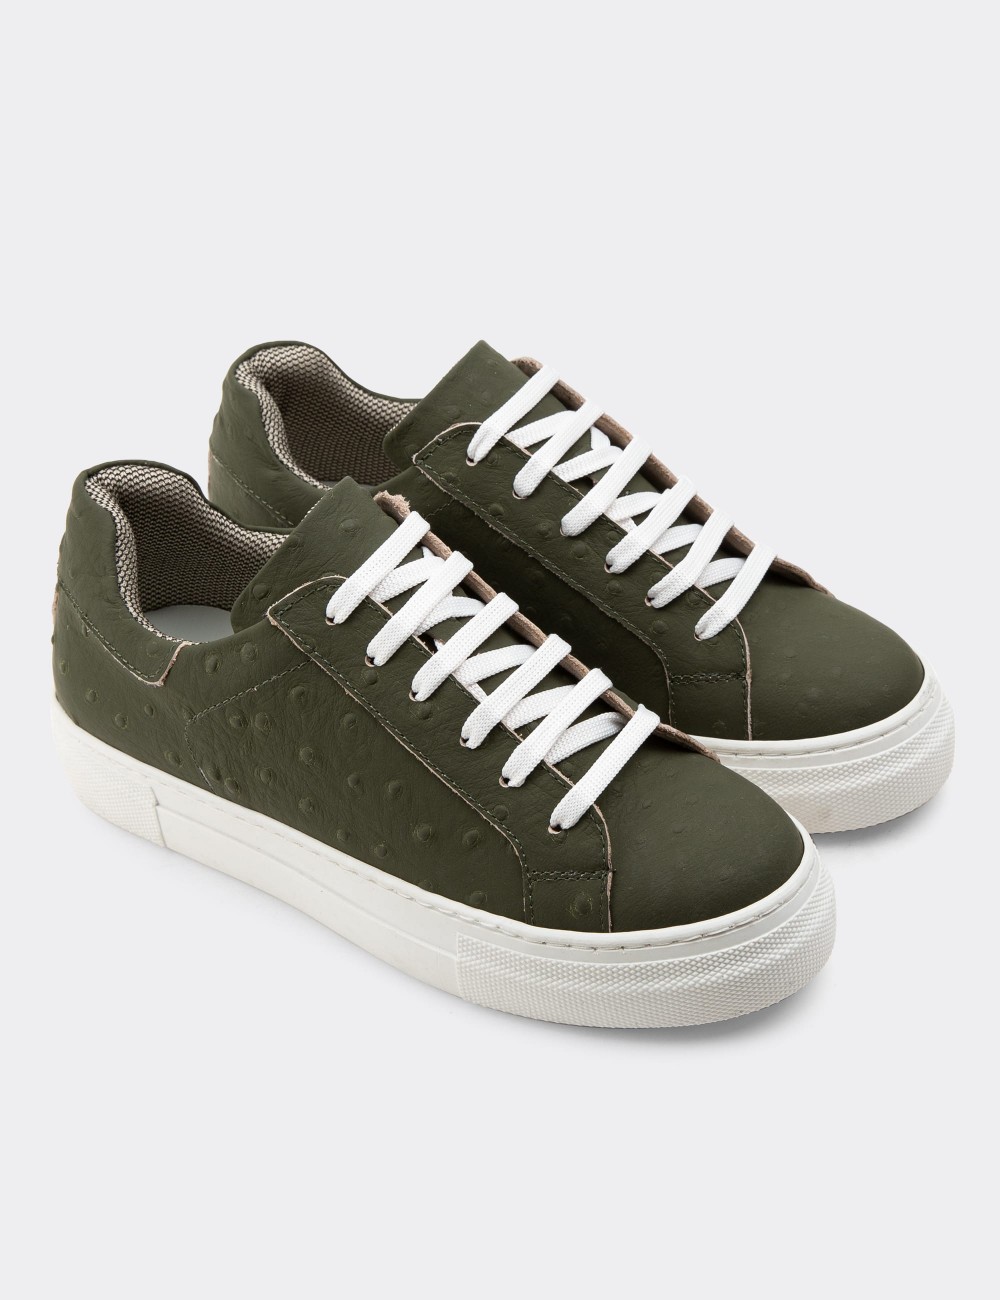 Green Nubuck Leather Sneakers - Z1681ZHAKC02